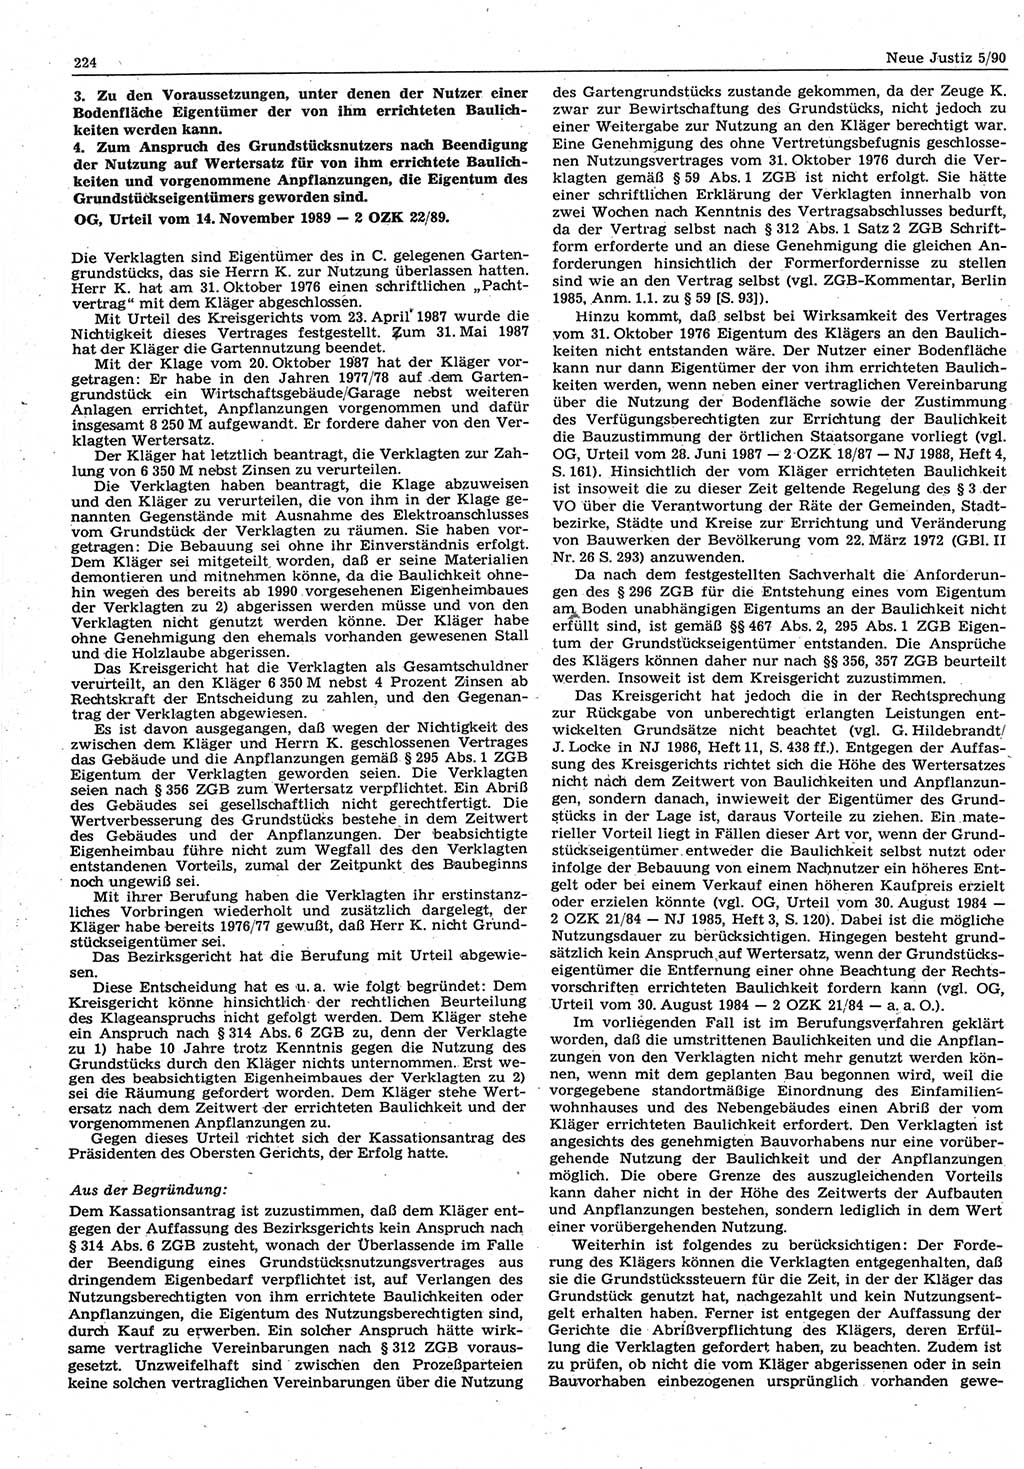 Neue Justiz (NJ), Zeitschrift für Rechtsetzung und Rechtsanwendung [Deutsche Demokratische Republik (DDR)], 44. Jahrgang 1990, Seite 224 (NJ DDR 1990, S. 224)